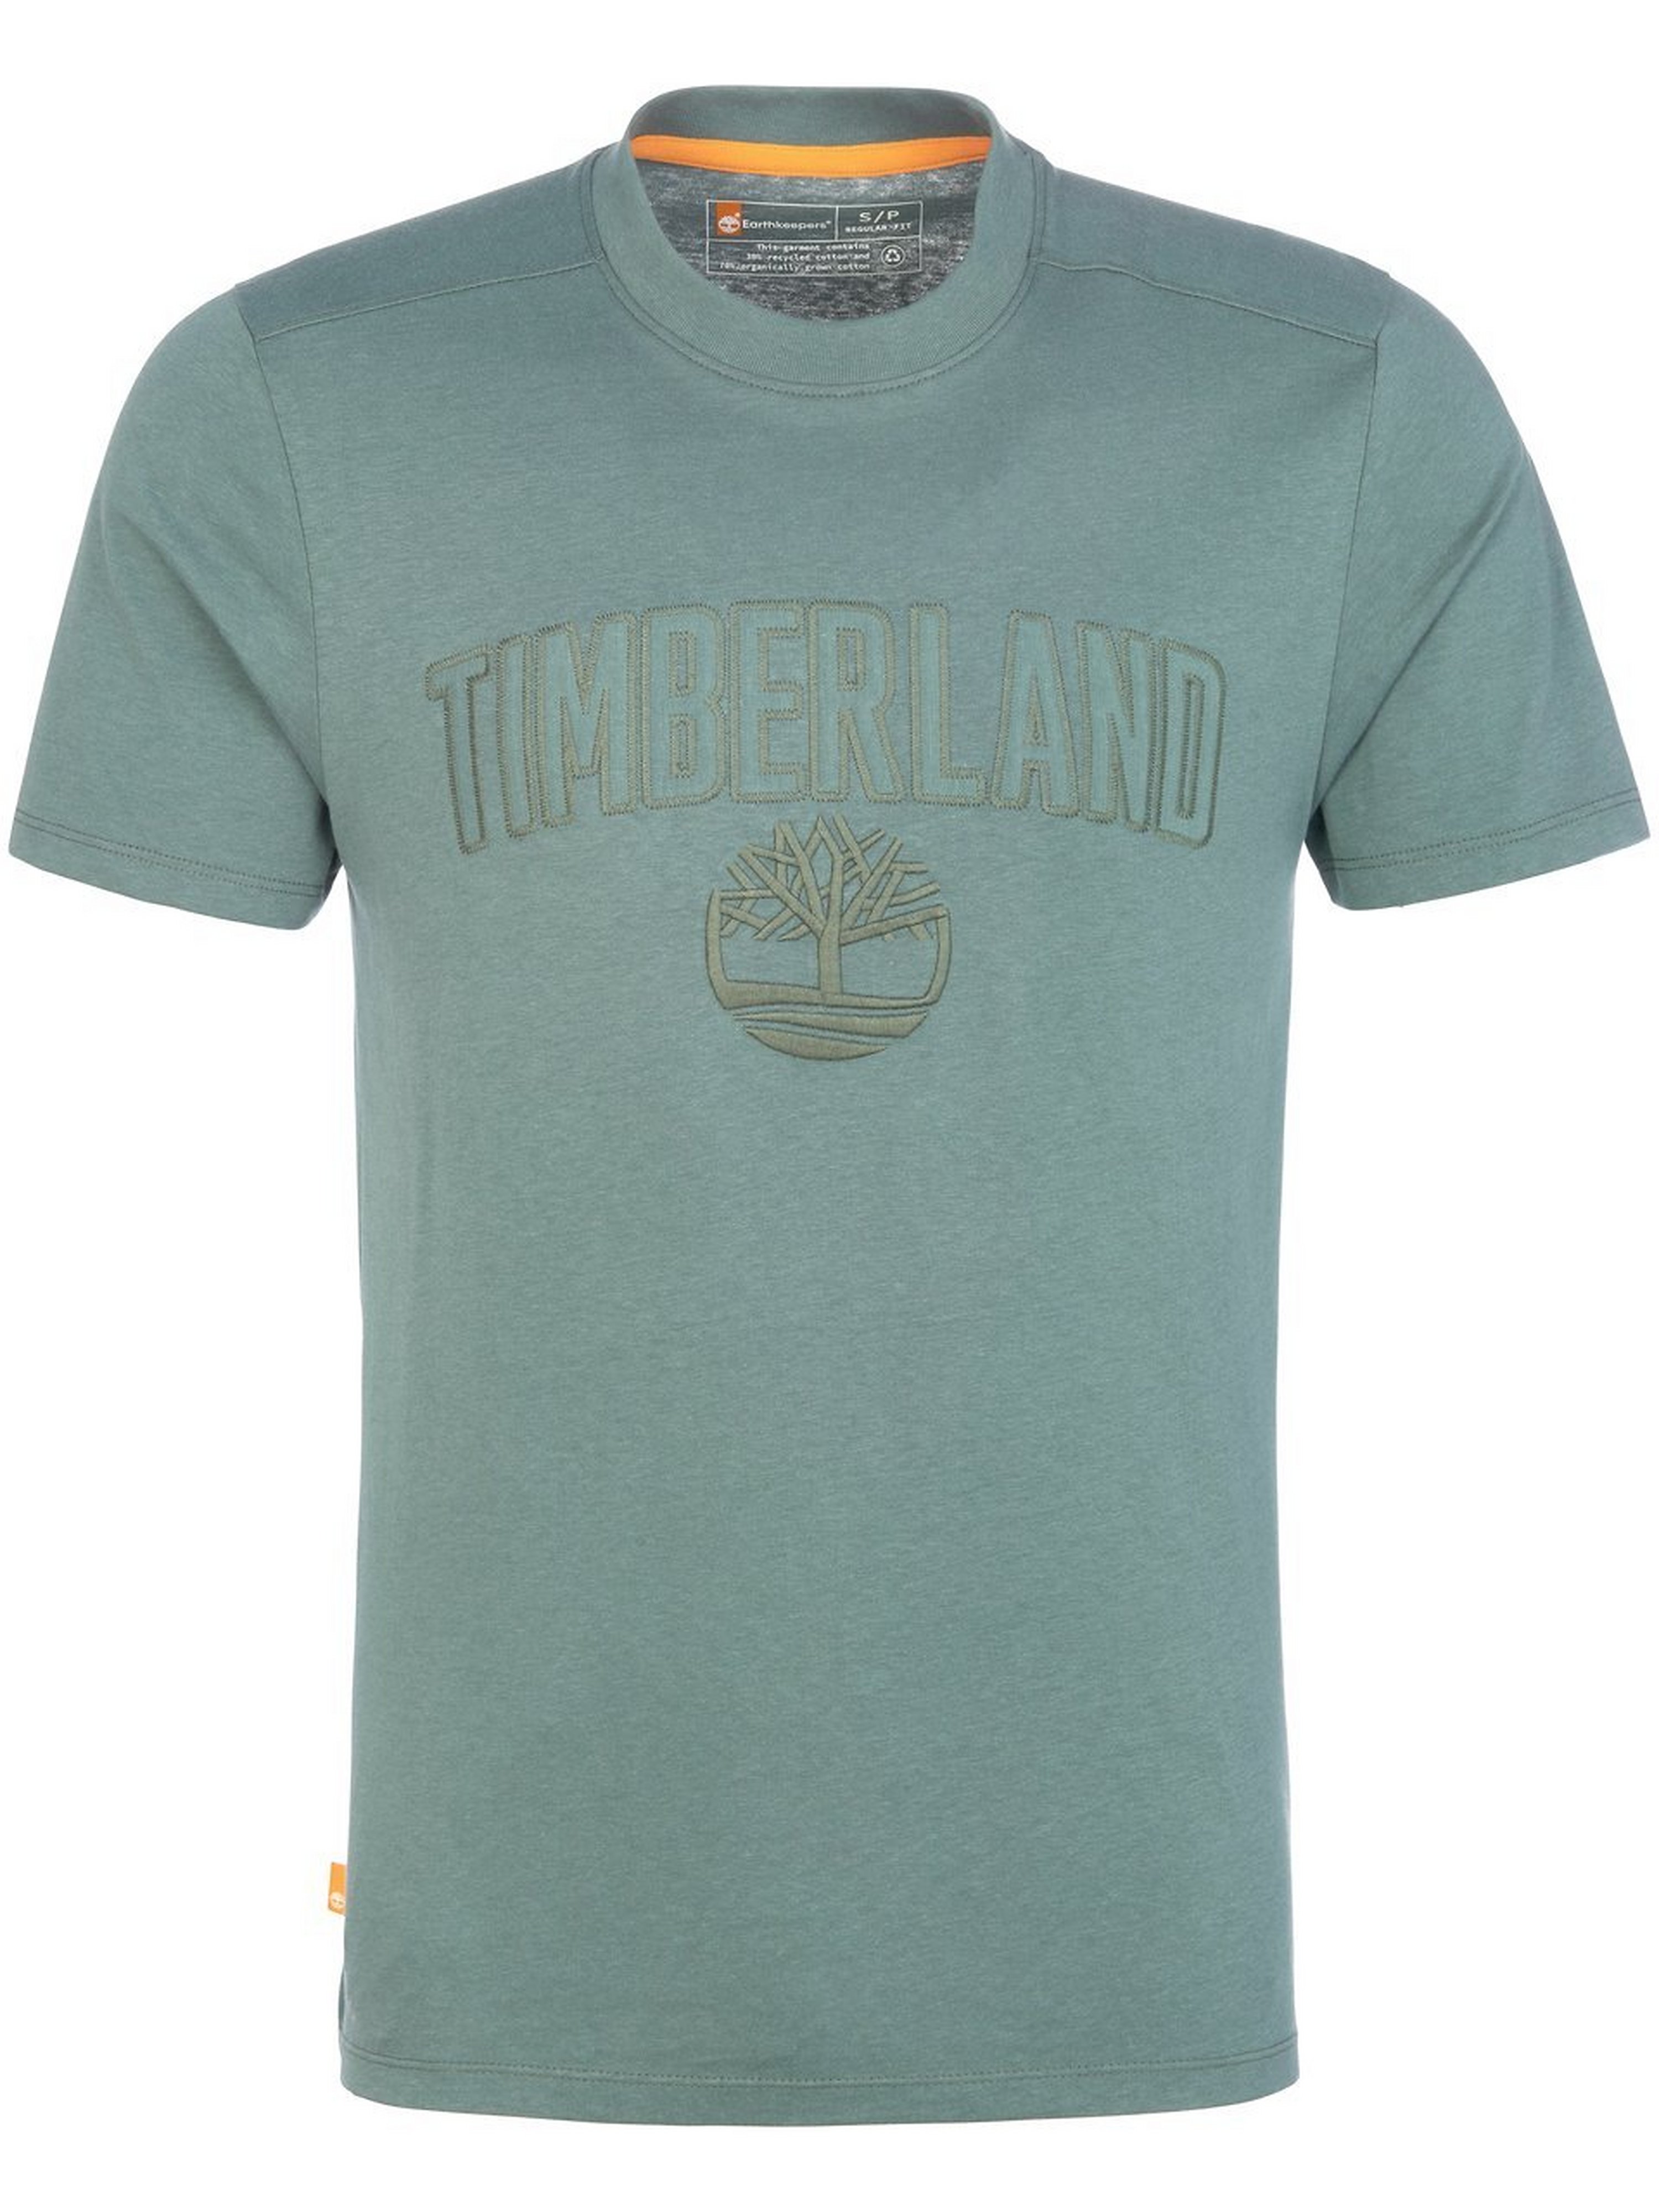 T-Shirt Timberland grün Größe: 52